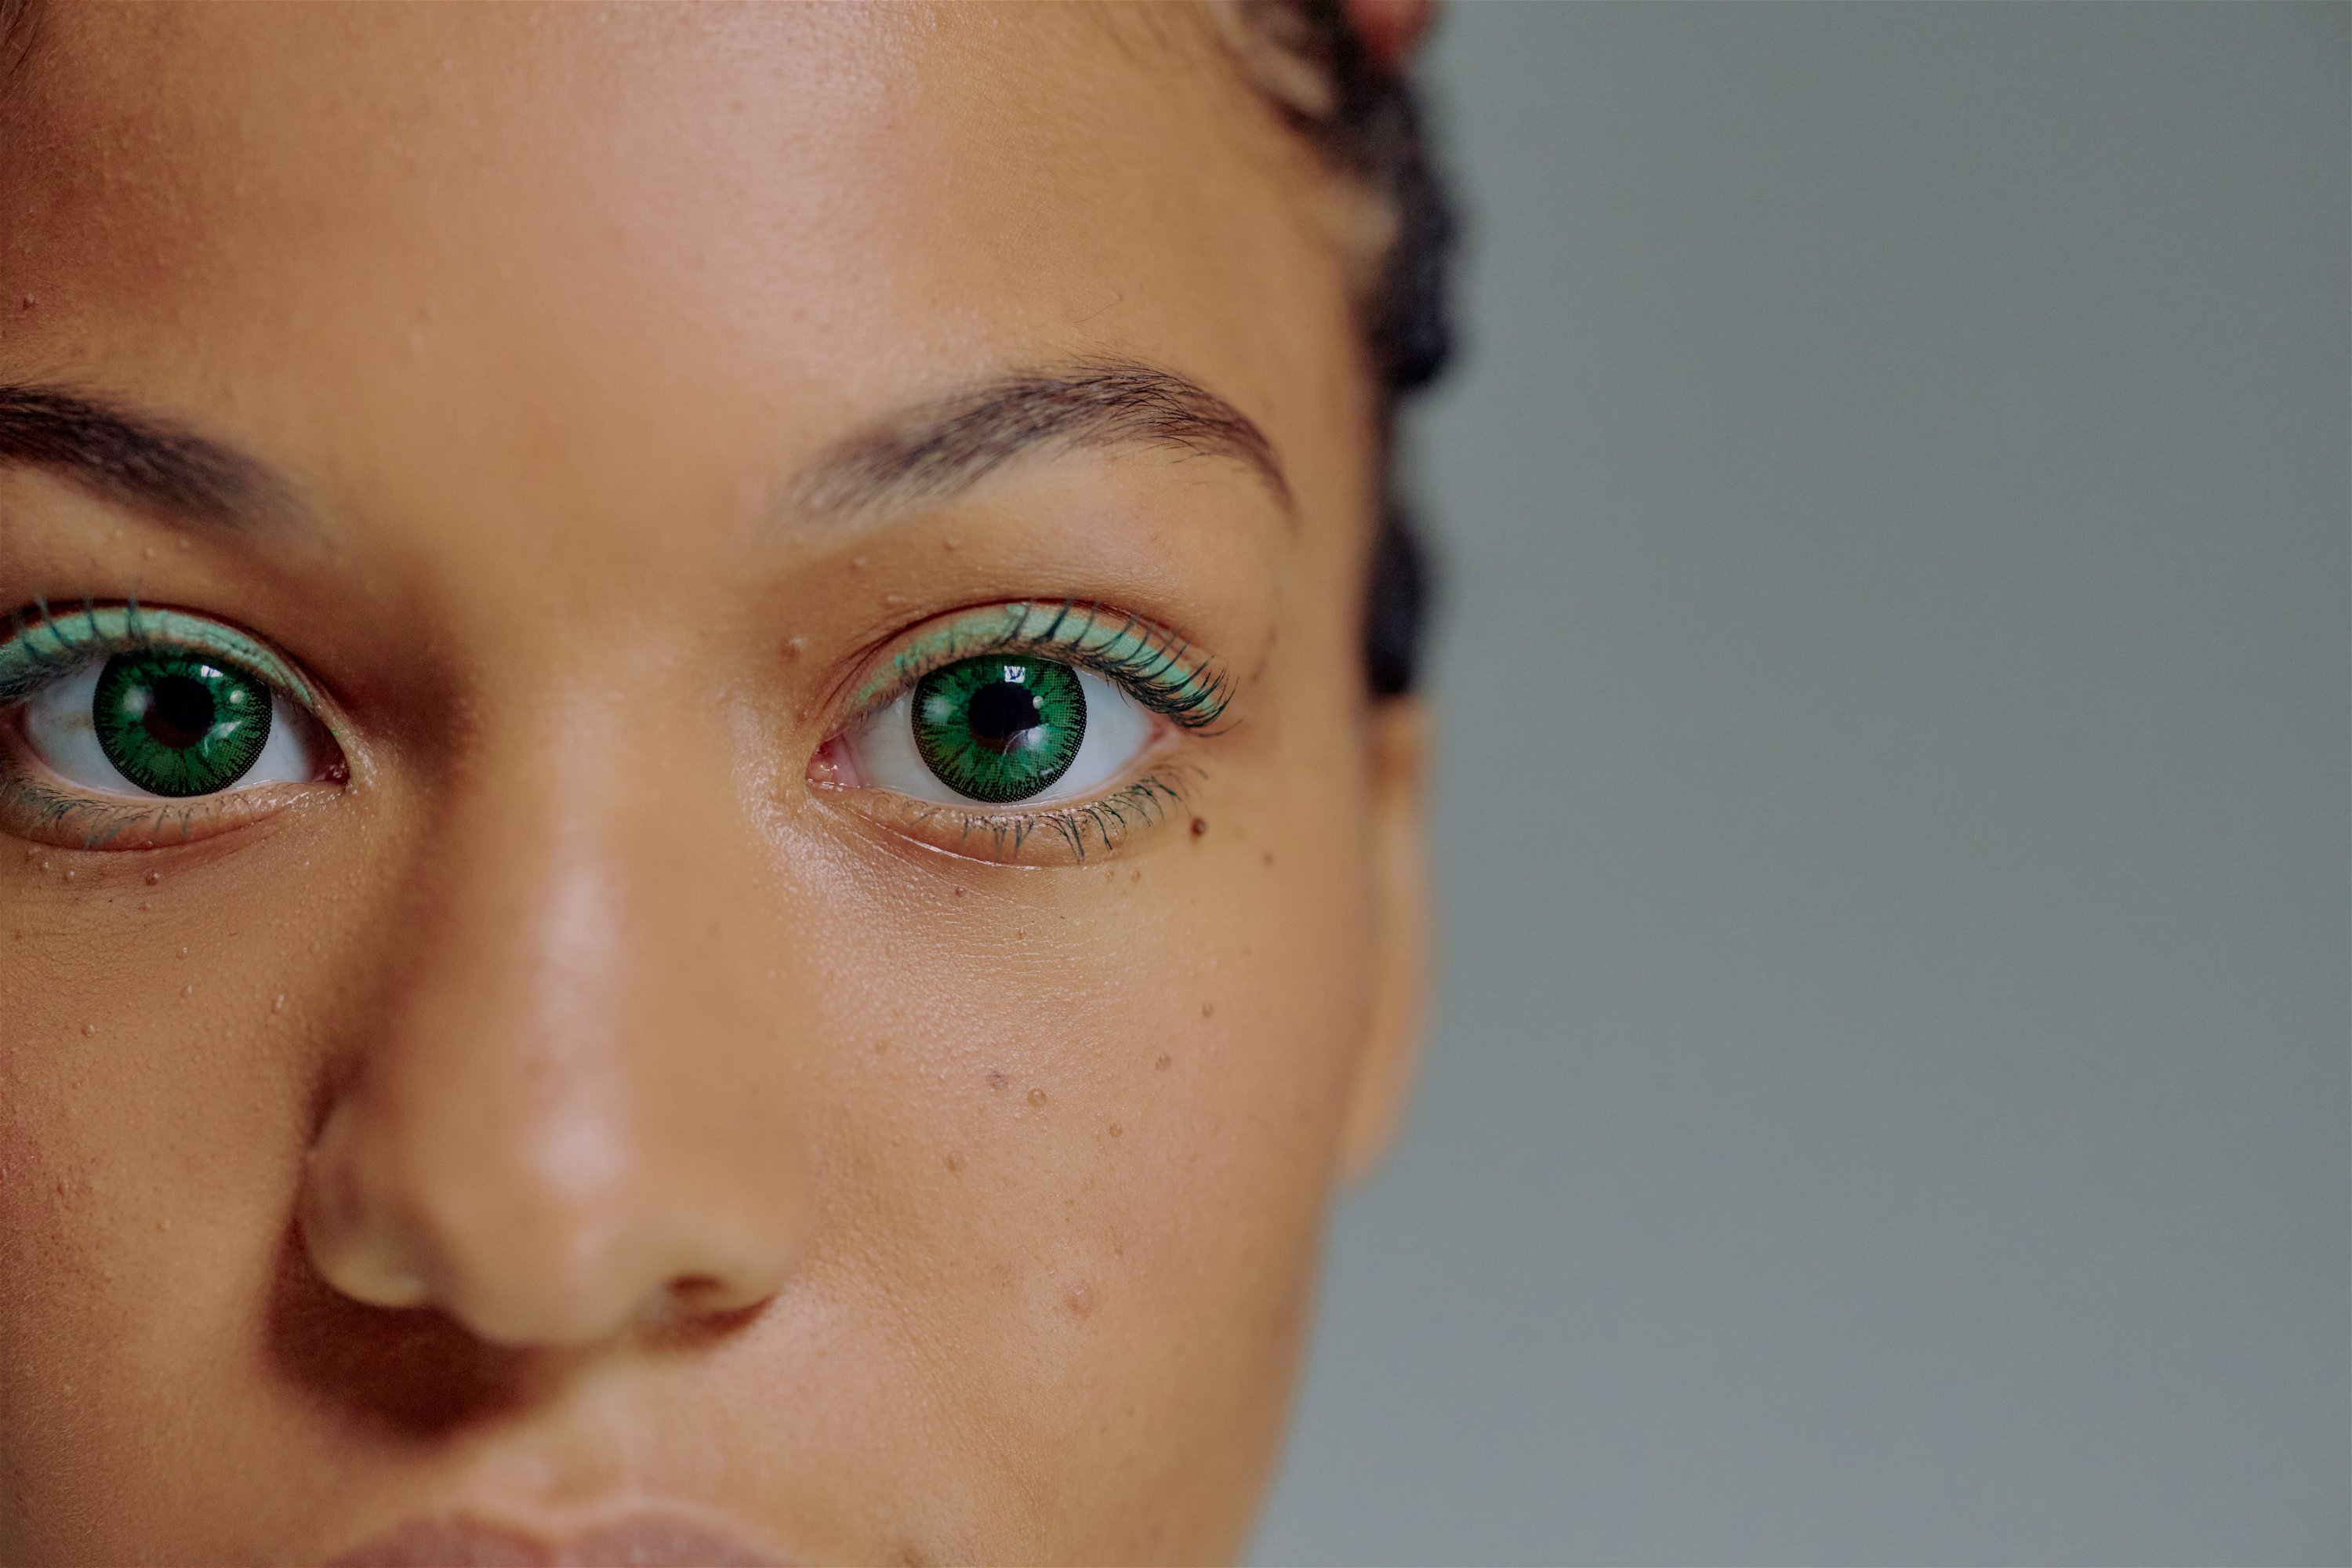 Das Bild zeigt die Augen einer Frau, die grüne farbige Kontaktlinsen trägt.